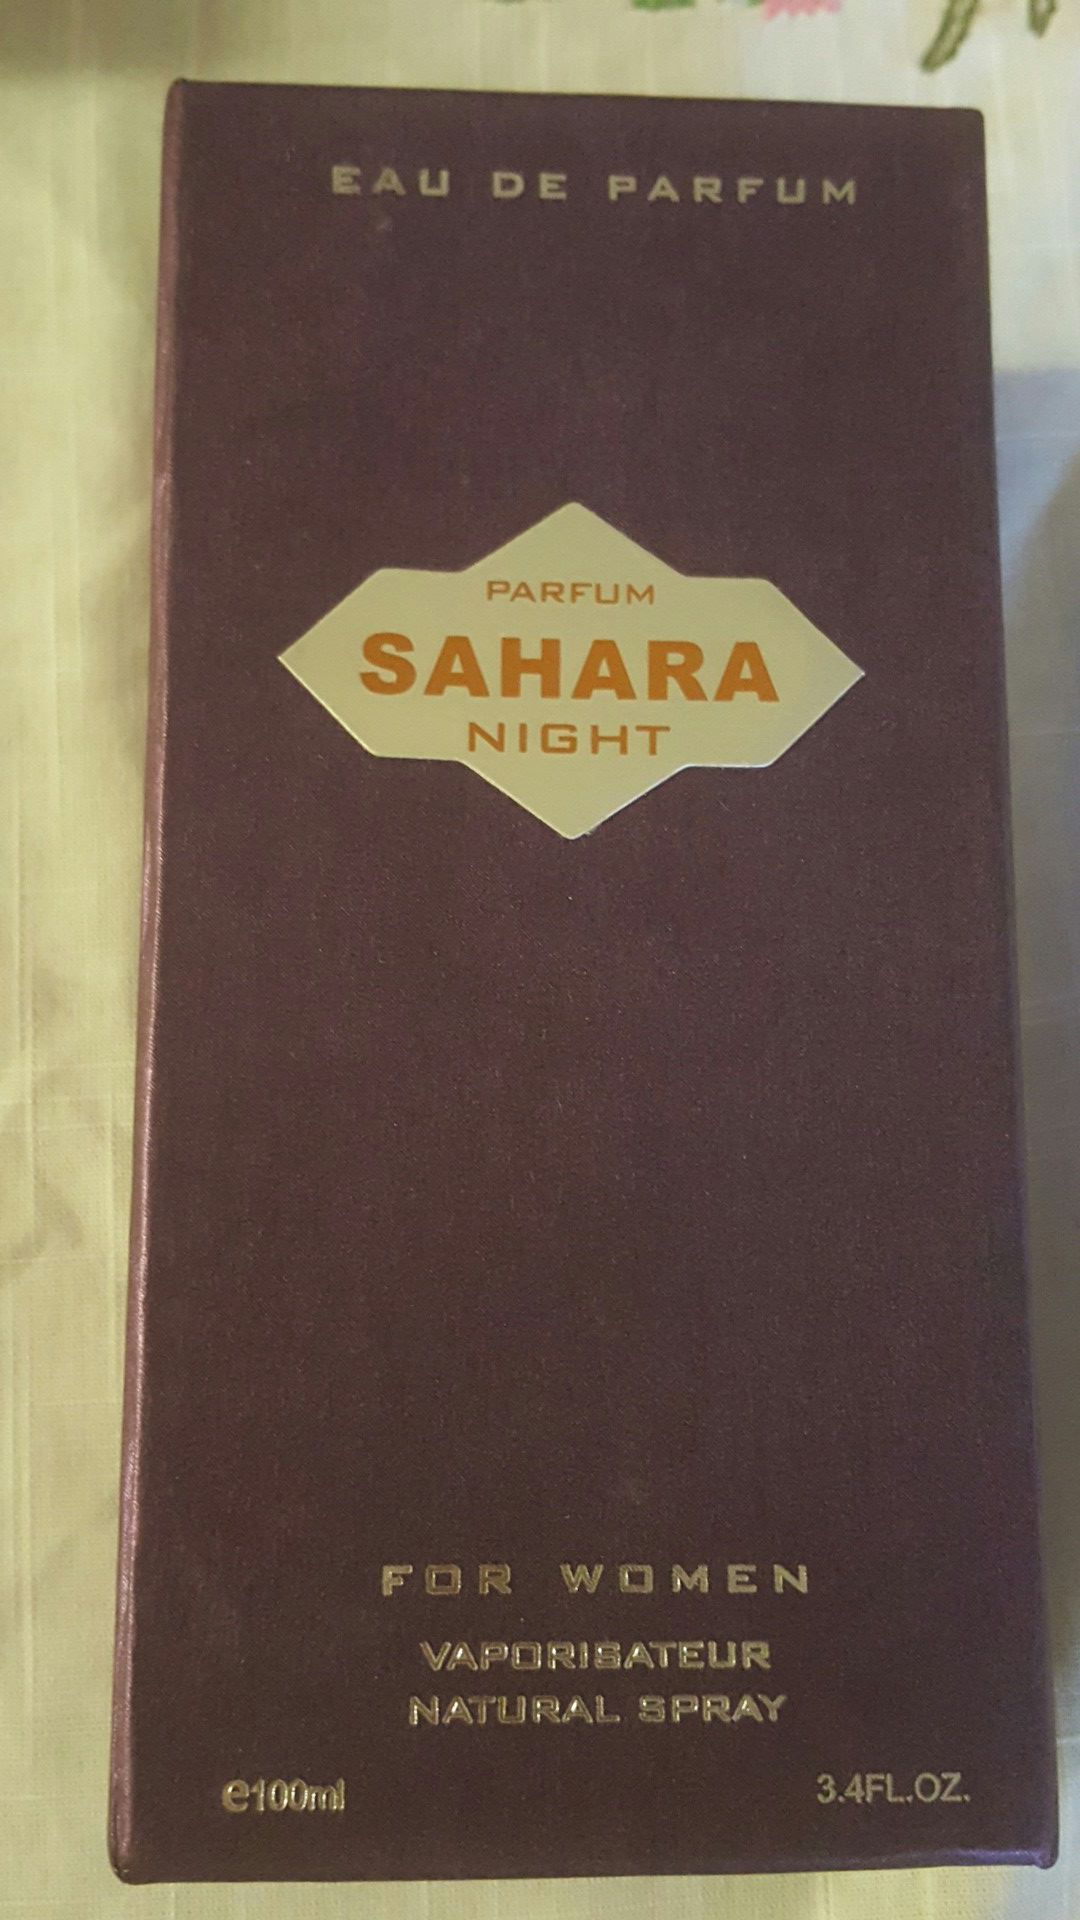 Sahara Night Perfume for women